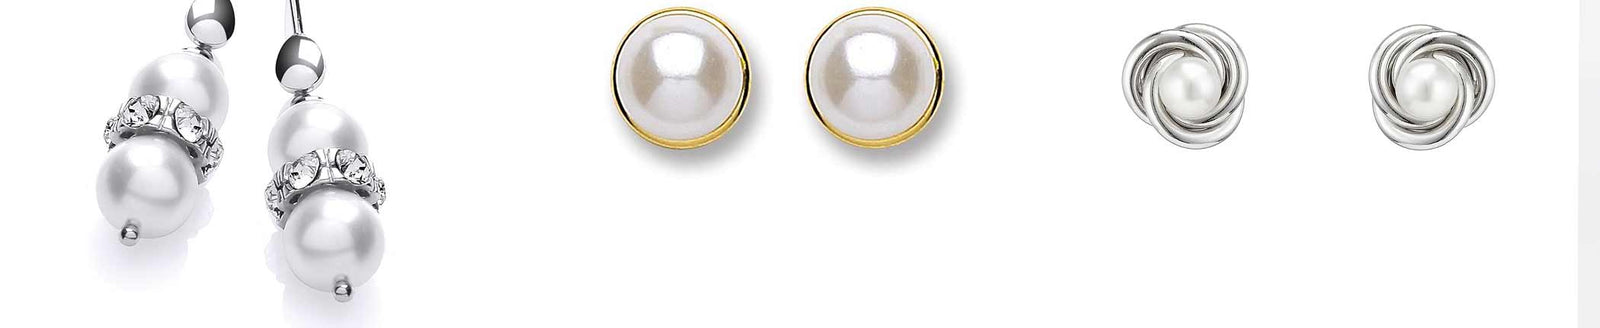 Pearl studs, pearl drop earrings